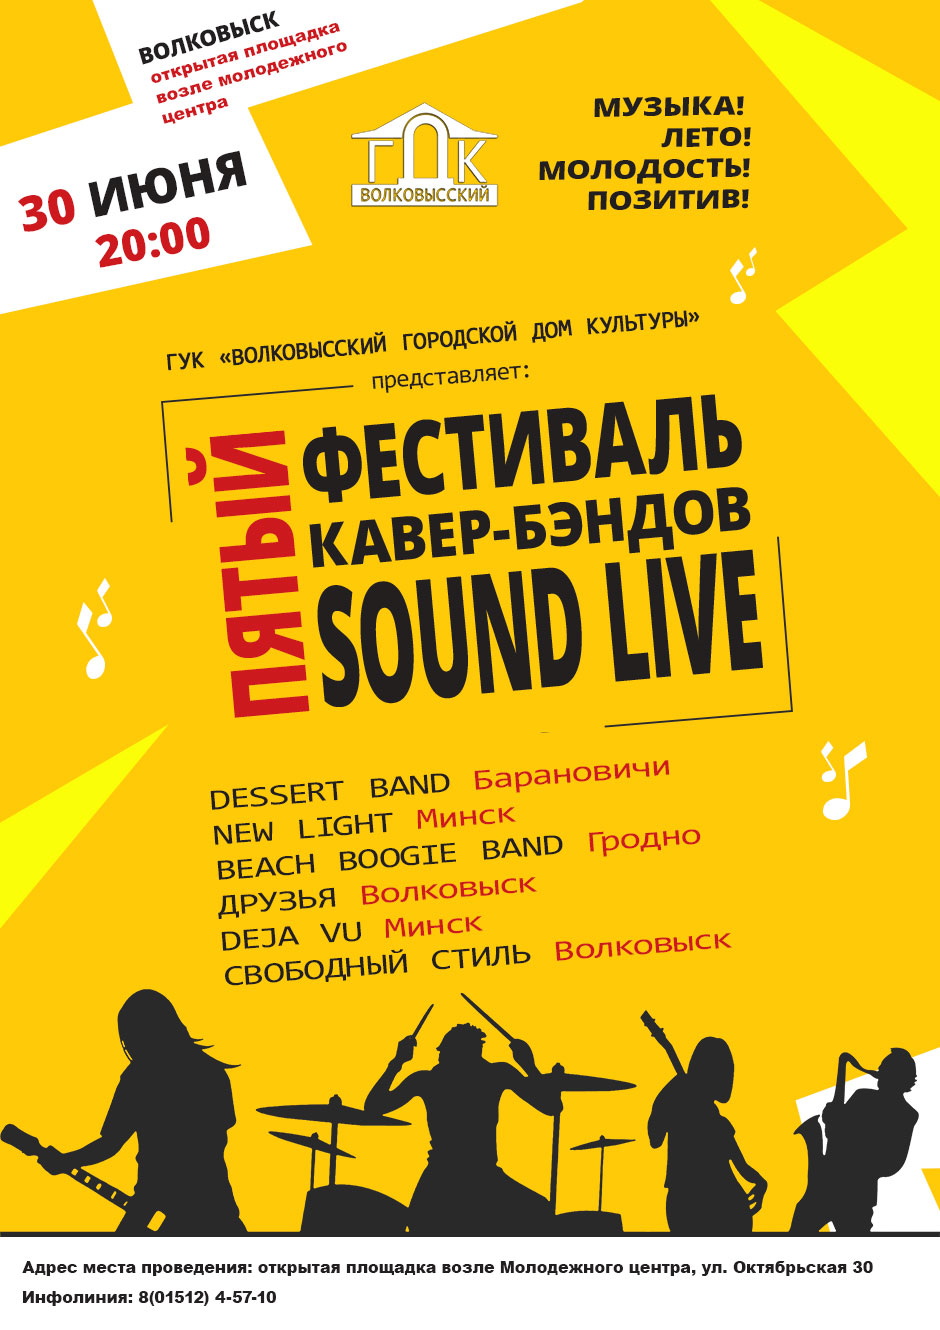 Пятый фестиваль кавер-бэндов "Sound live" в Волковыске